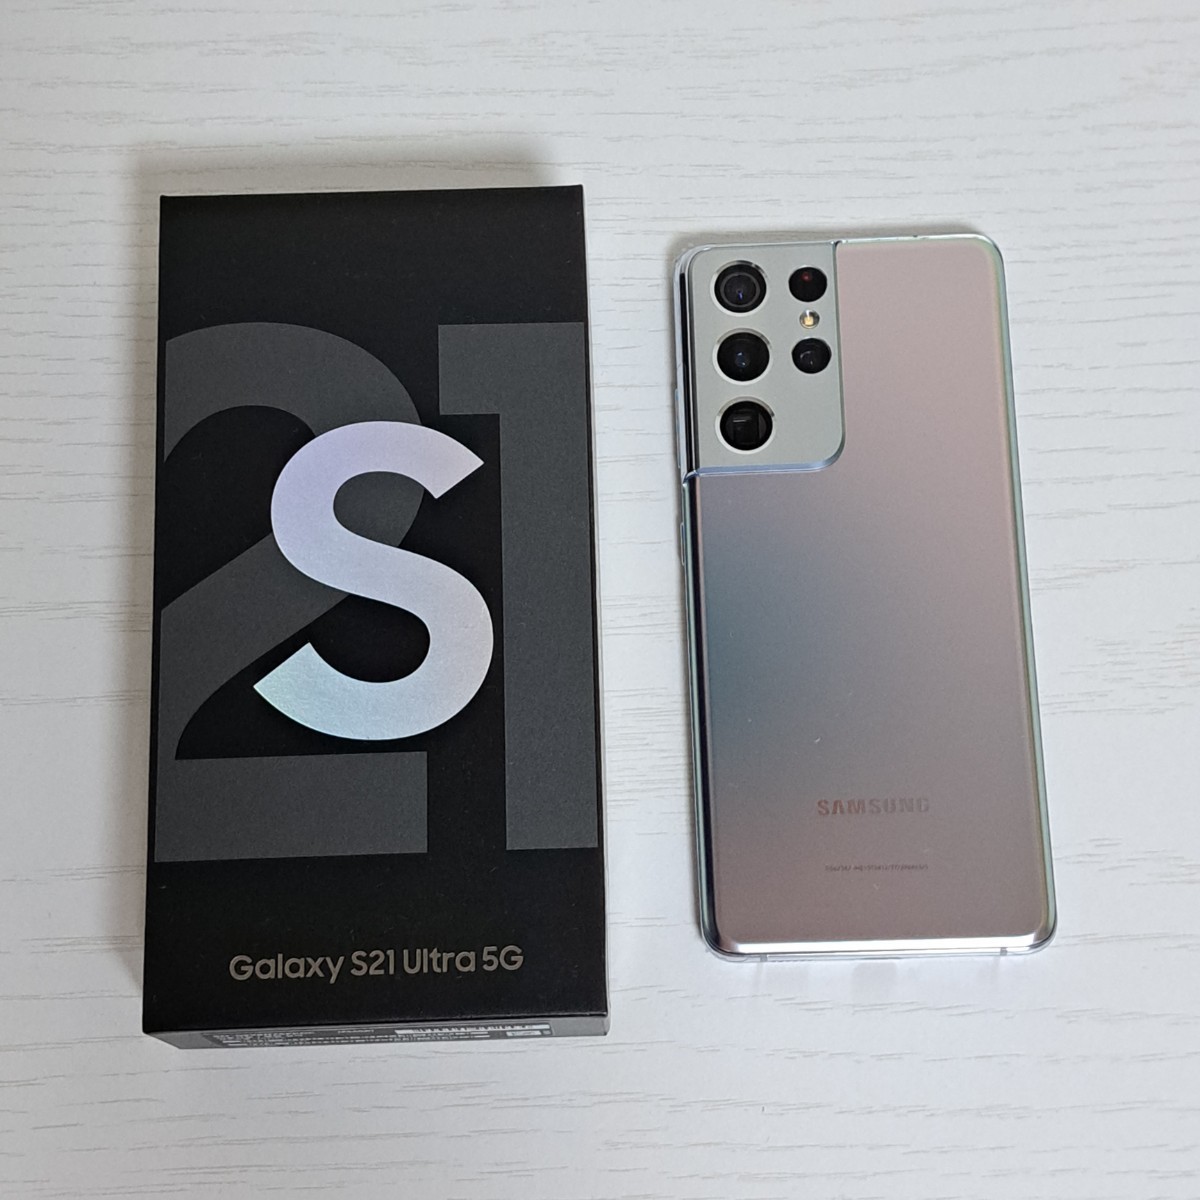 Galaxy S21 ultra 5Gシルバー 256GB SIMフリー-